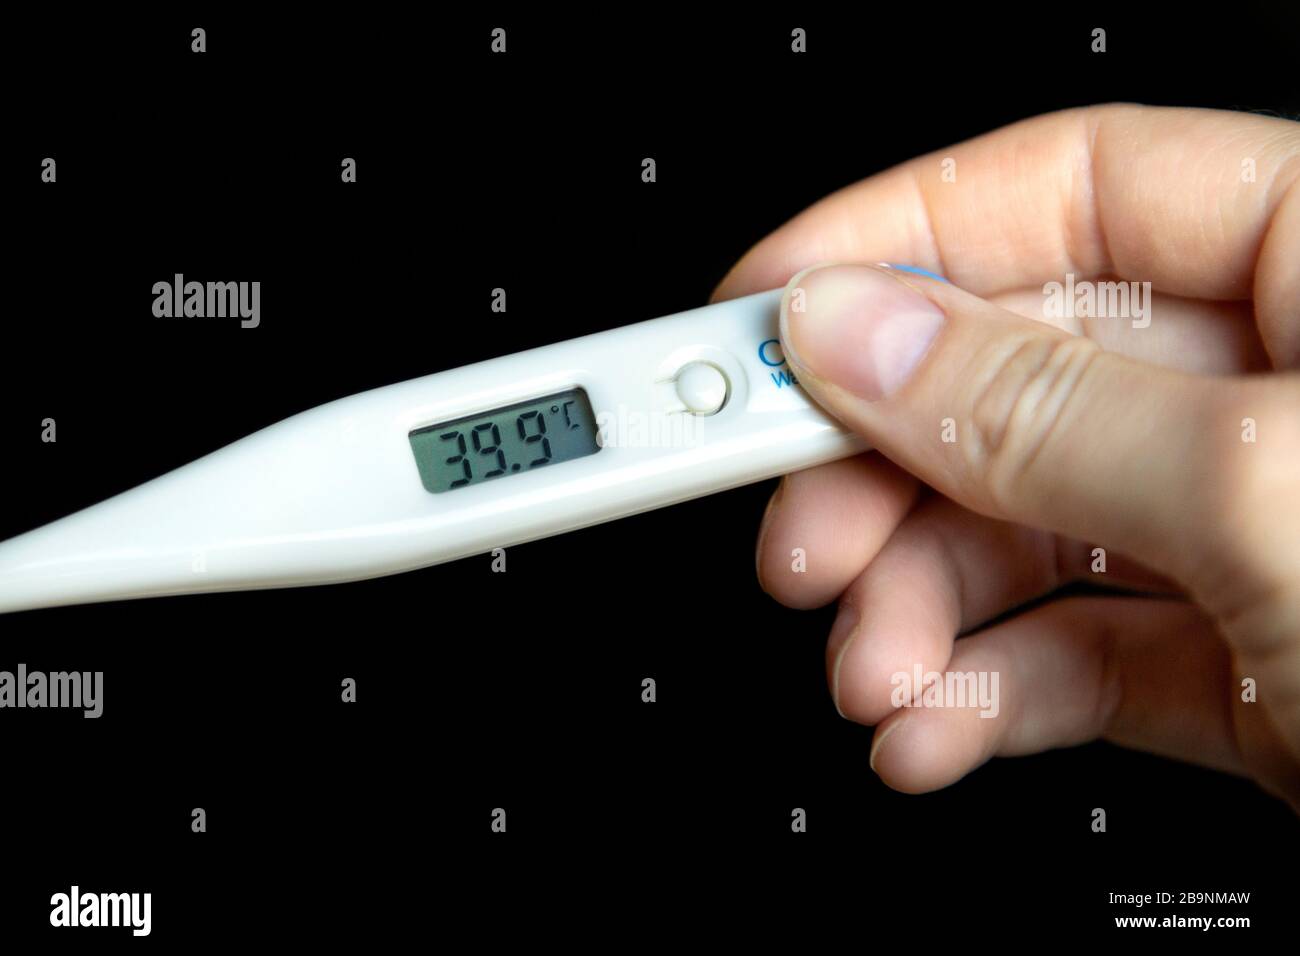 Halten Sie ein Thermometer mit hohem Fieber von 39,9   C. Stockfoto